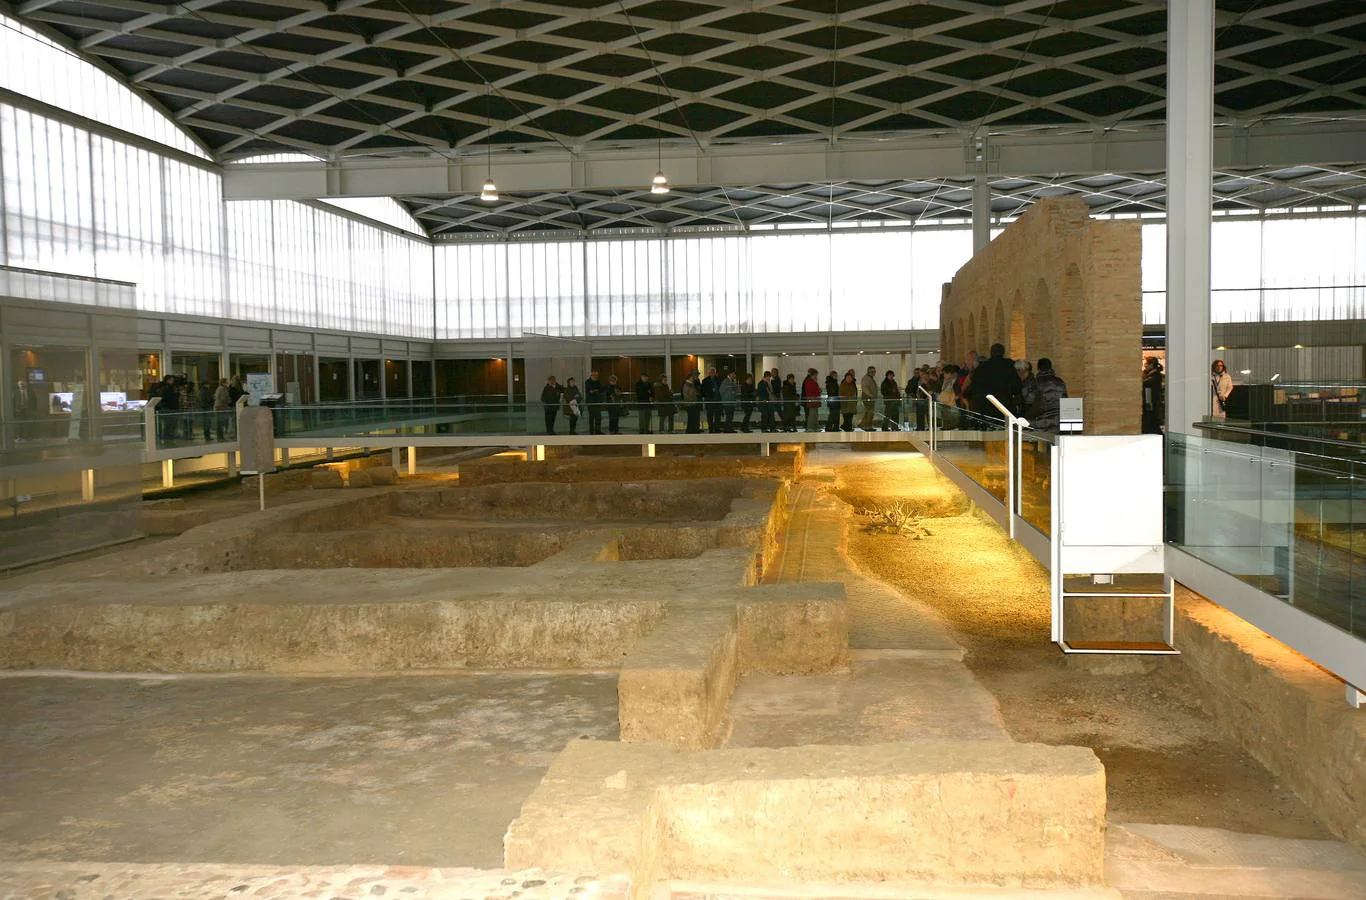 Villa romana de La Olmeda en Pedrosa de la Vega (Palencia). Uno de los yacimientos arqueológicos más importantes del mundo romano hispánico, descubierto en 1968.